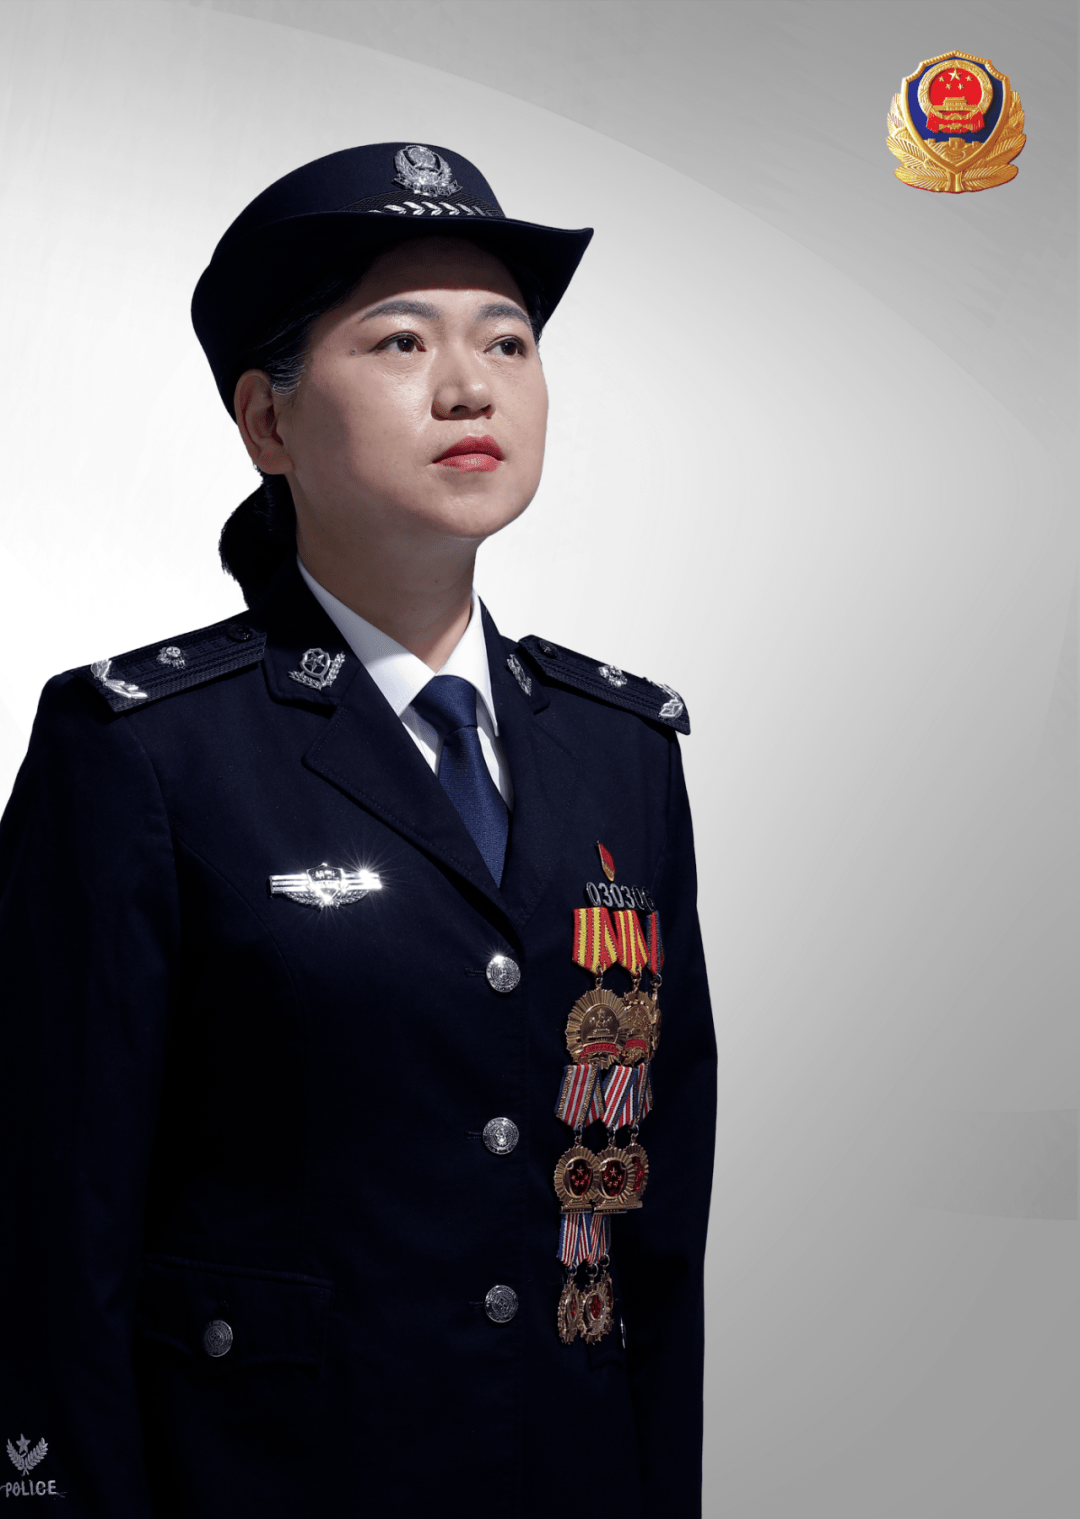 王群,女,汉族,湖北襄阳人,1967年11月出生,1988年9月参加公安工作